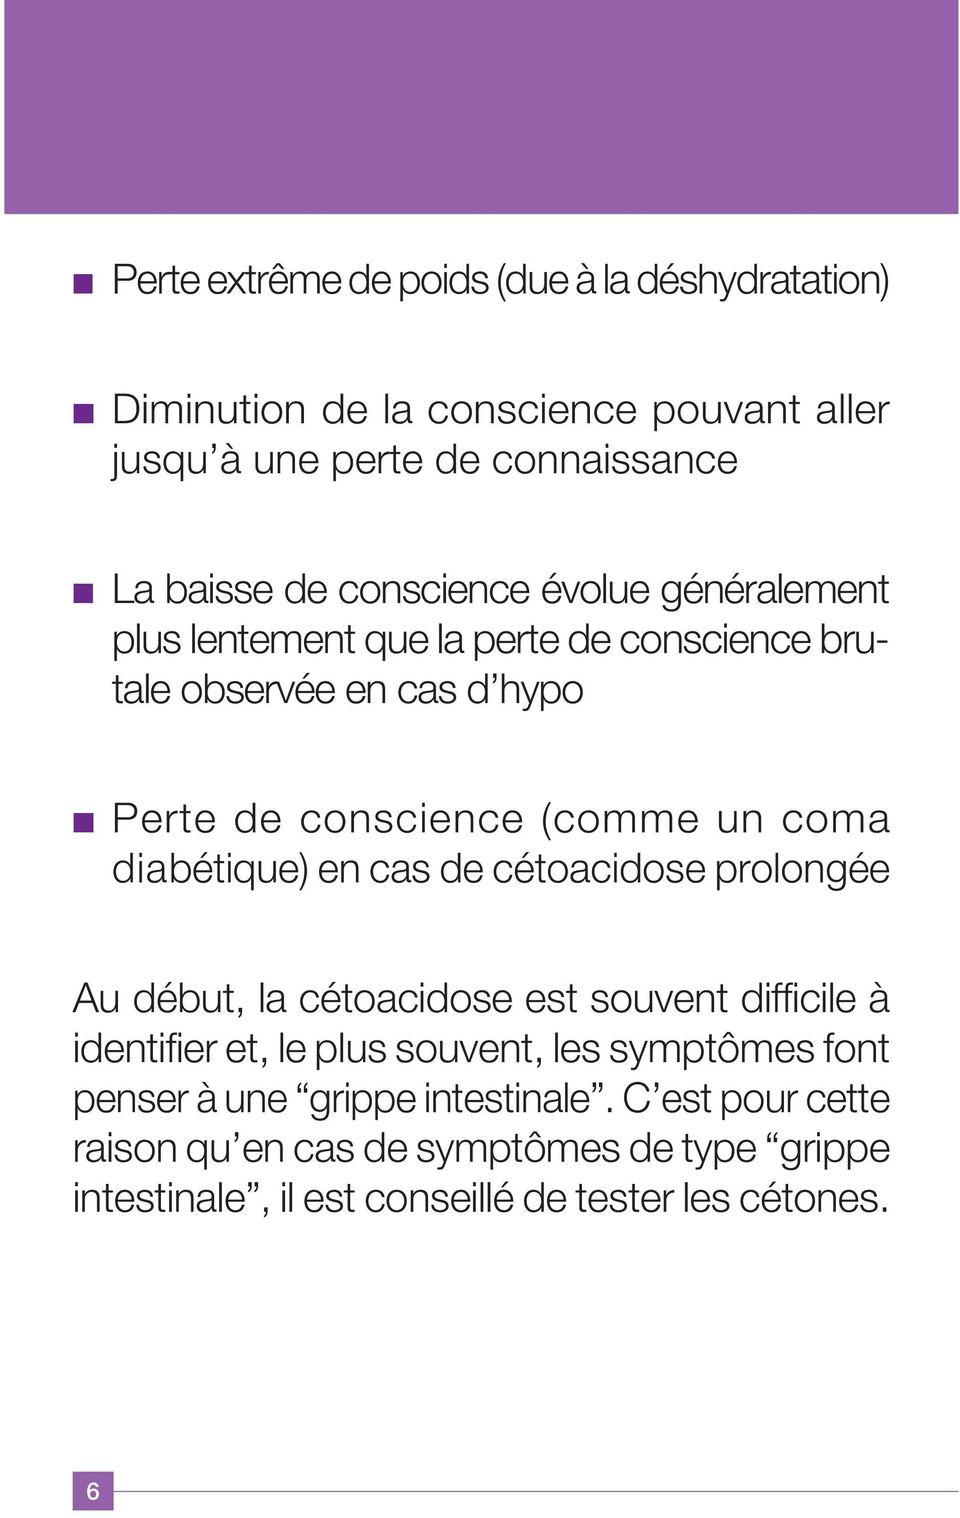 diabétique) en cas de cétoacidose prolongée Au début, la cétoacidose est souvent difficile à identifier et, le plus souvent, les symptômes